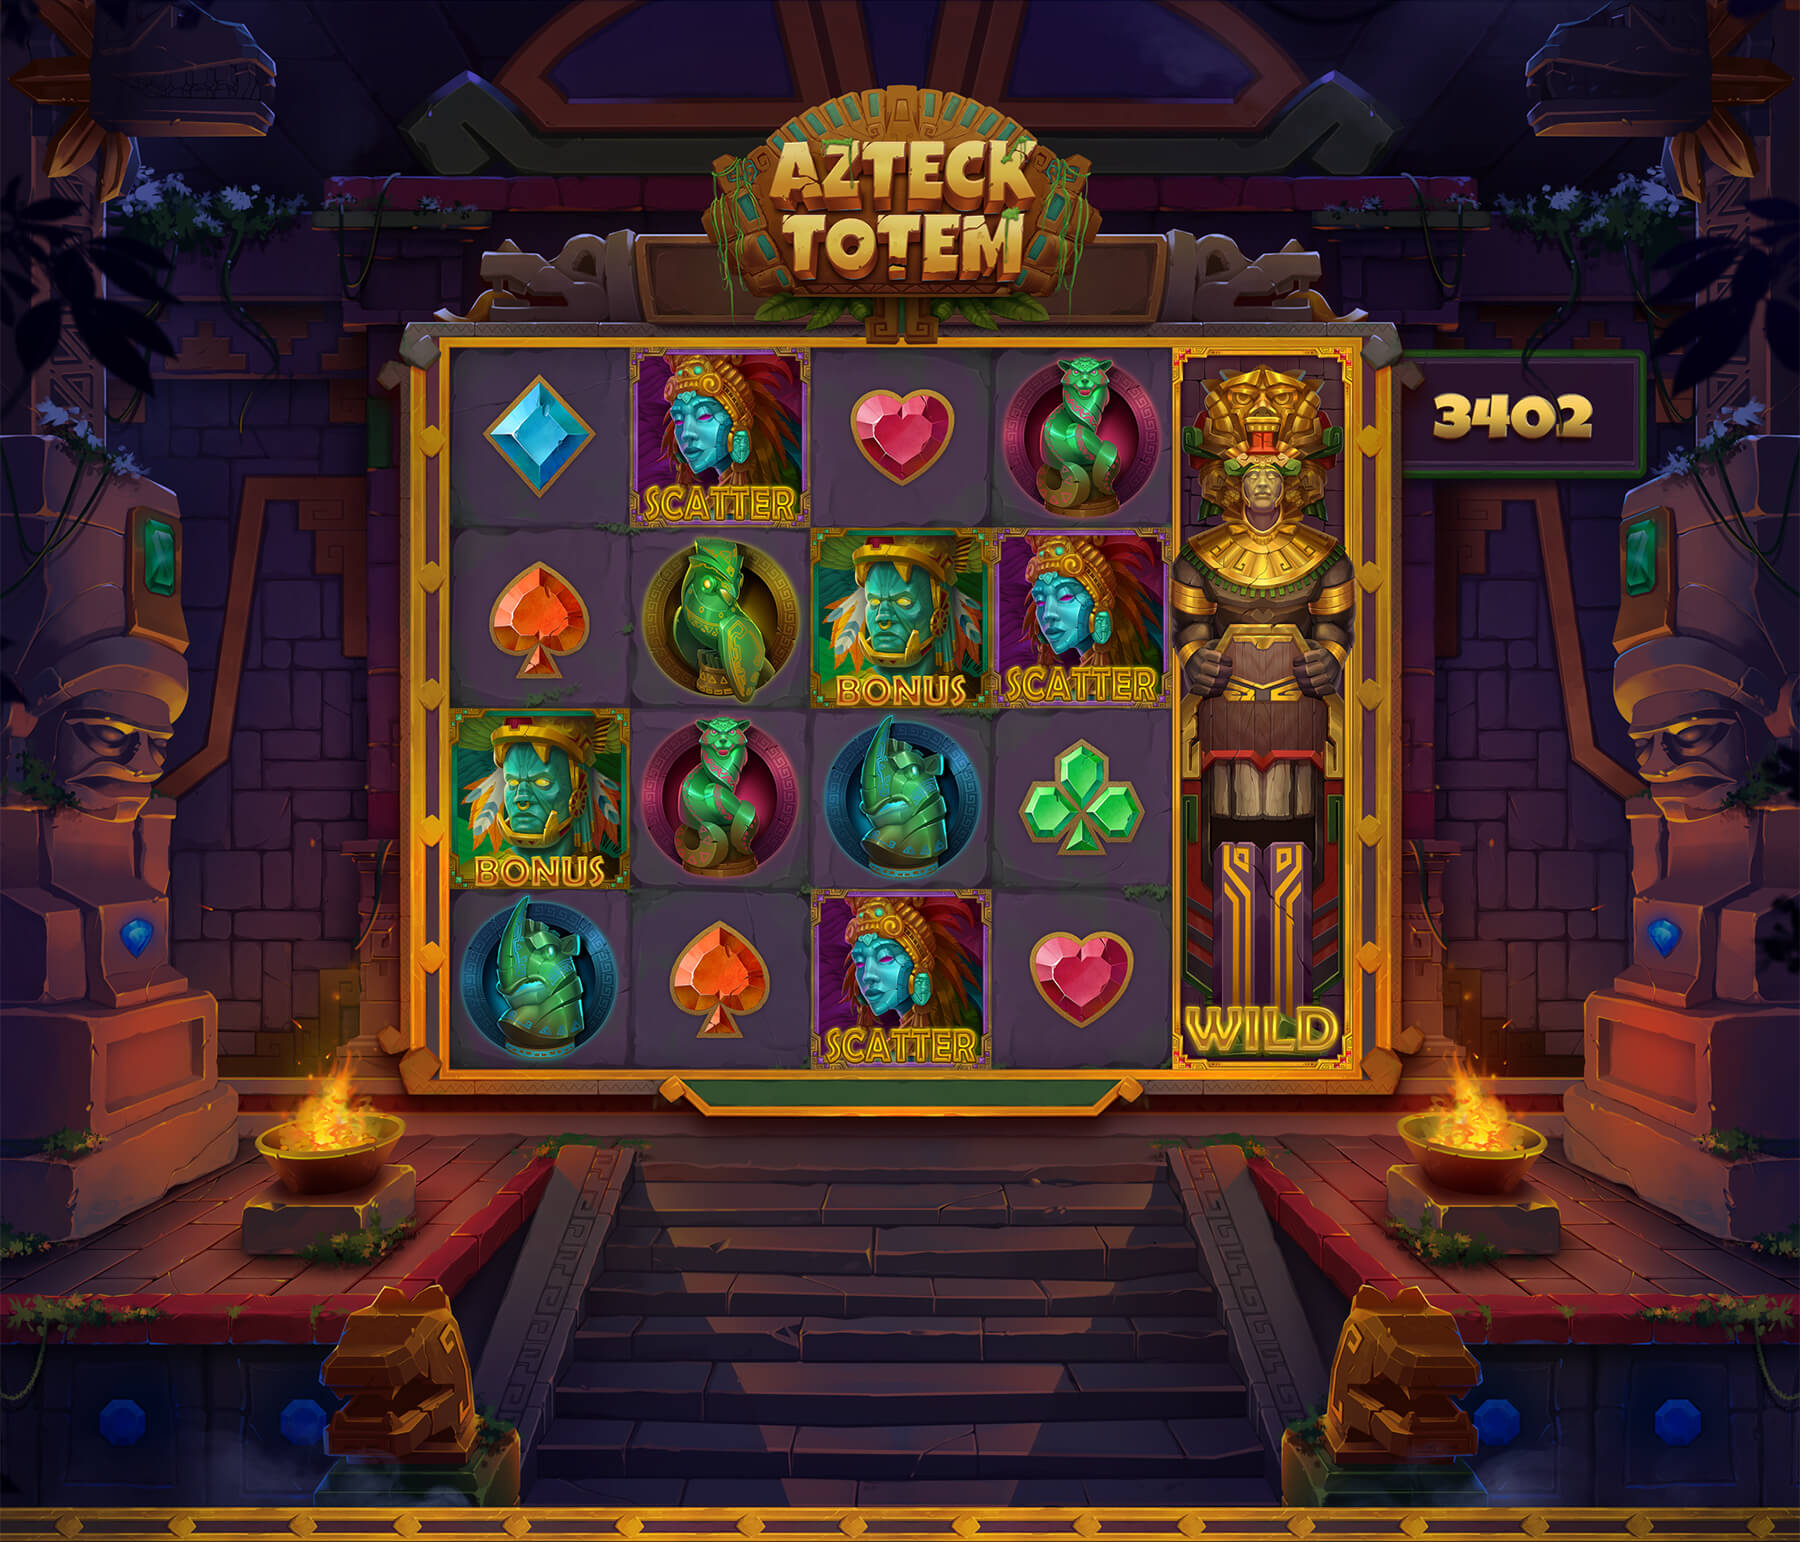 Aztec totem slot machine design